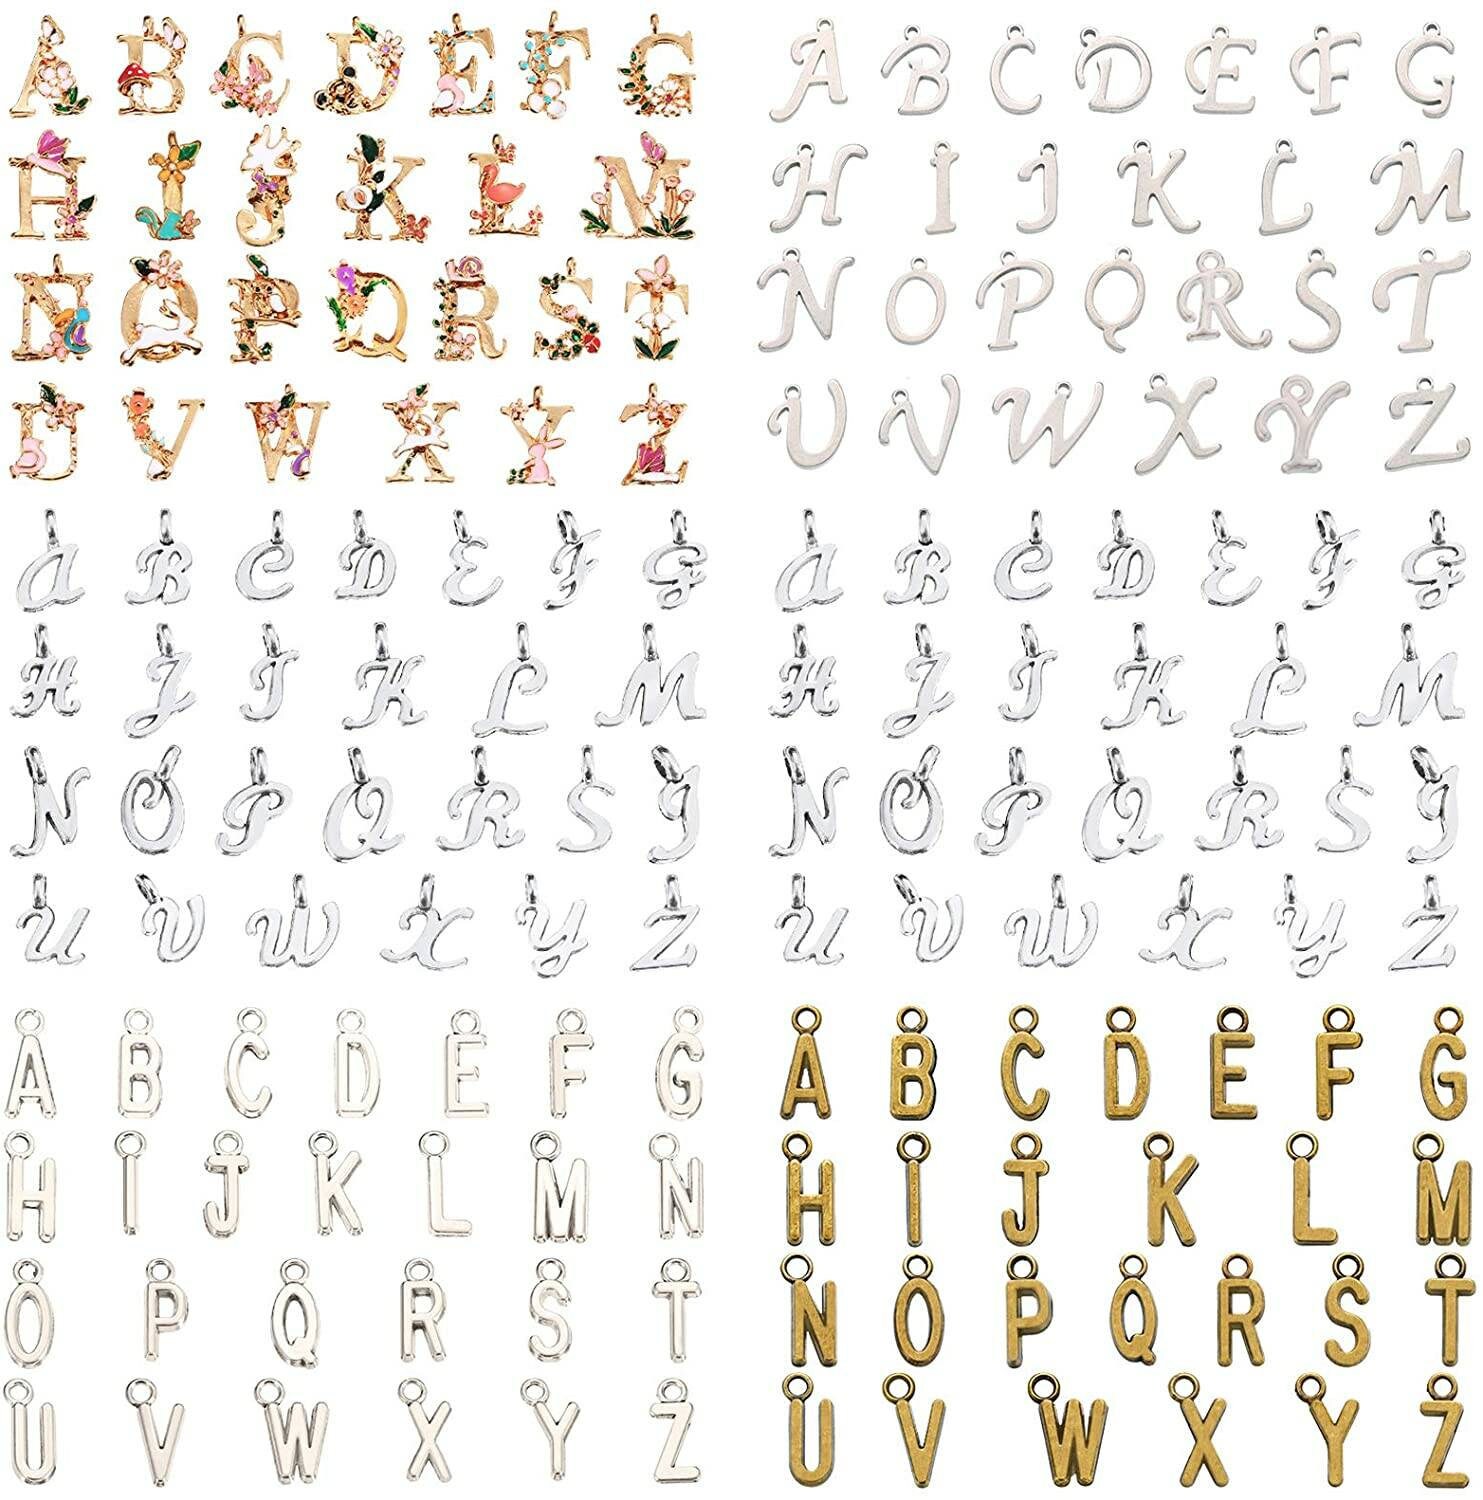 156PCS Antiqued Bronze Colour Metal alphabet letter charms Jewelry